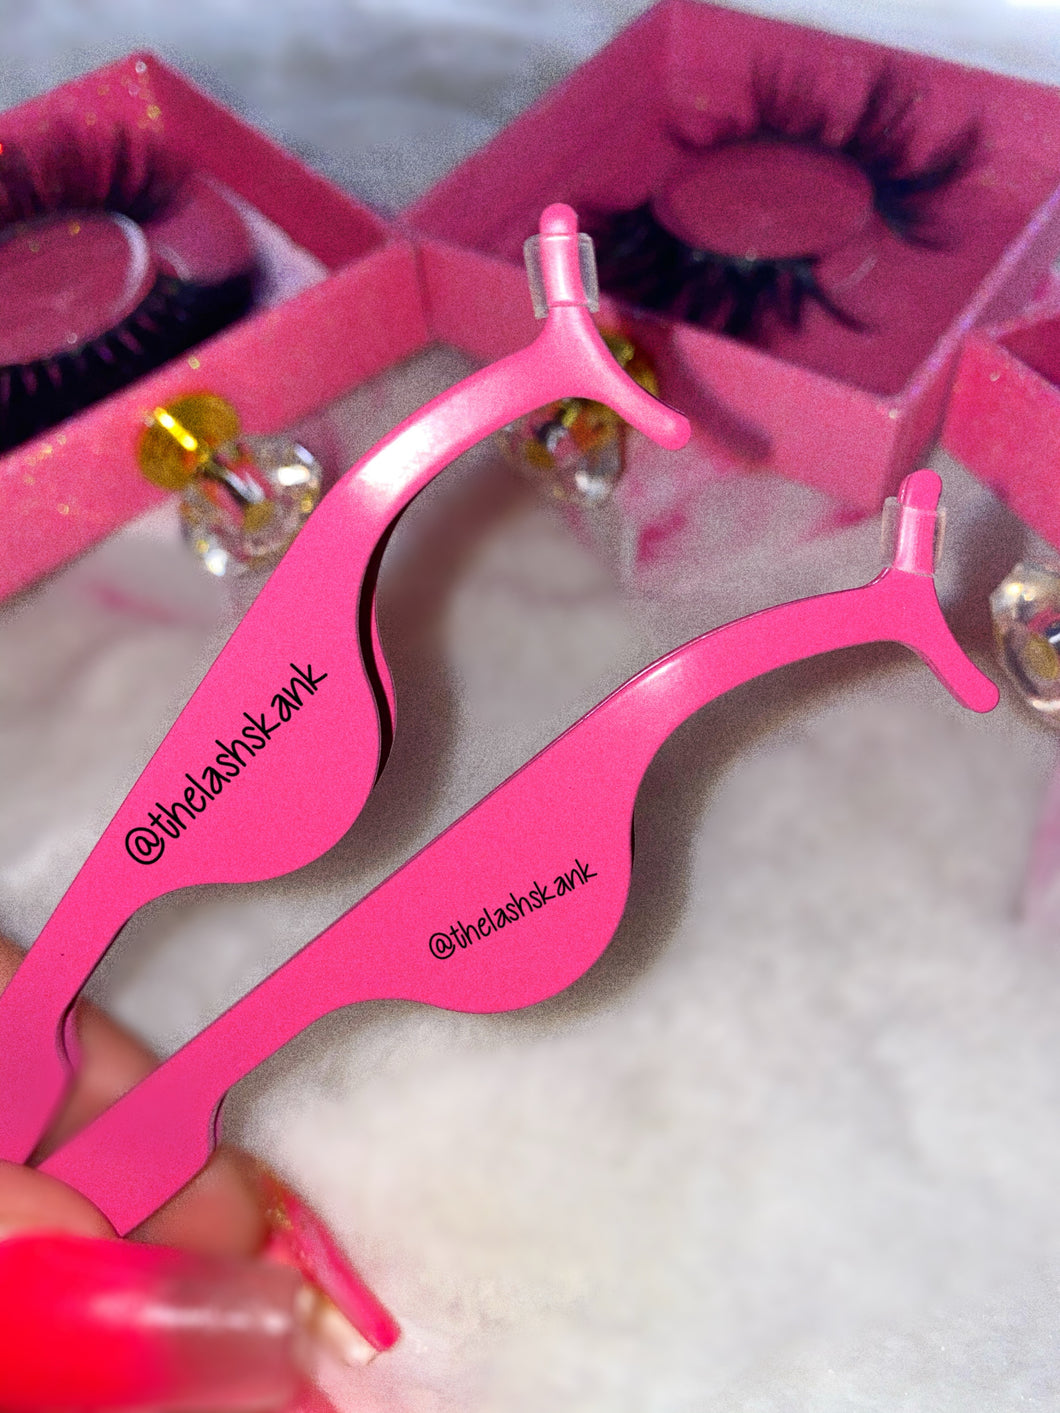 Hot Pink Tweezers 🍭